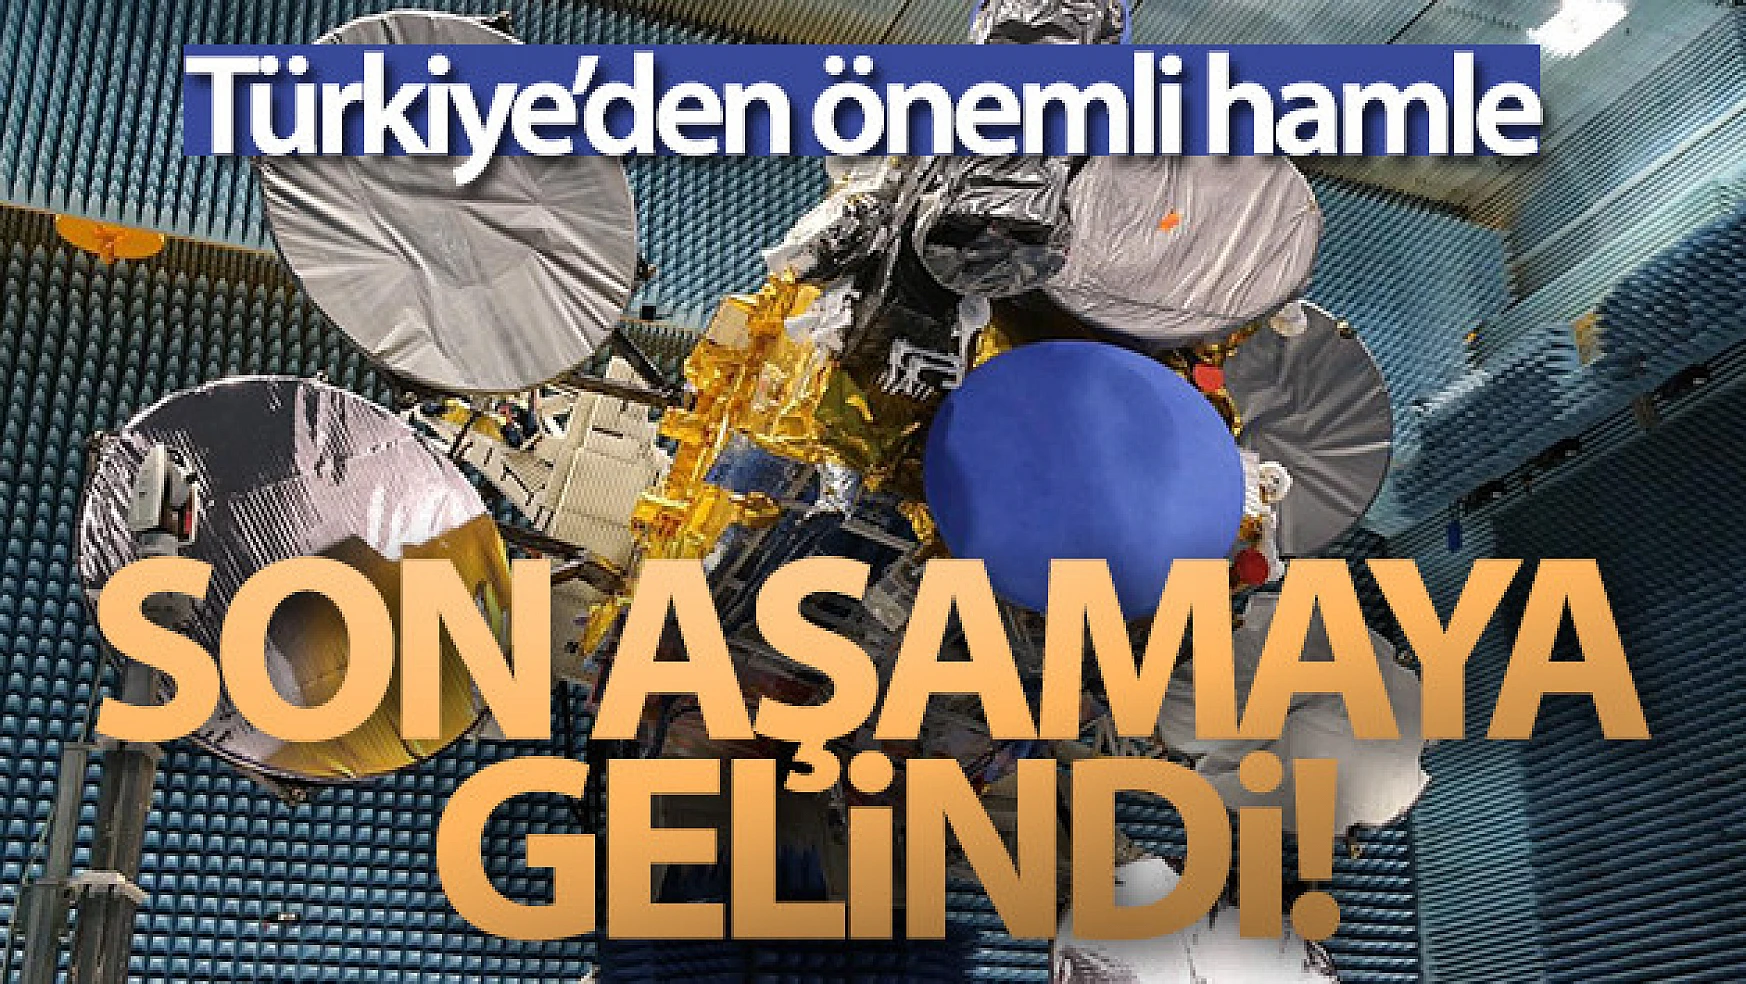 Bakan Karaismailoğlu: 'Türksat 5A ve 5B uydularında son aşamaya geldik'